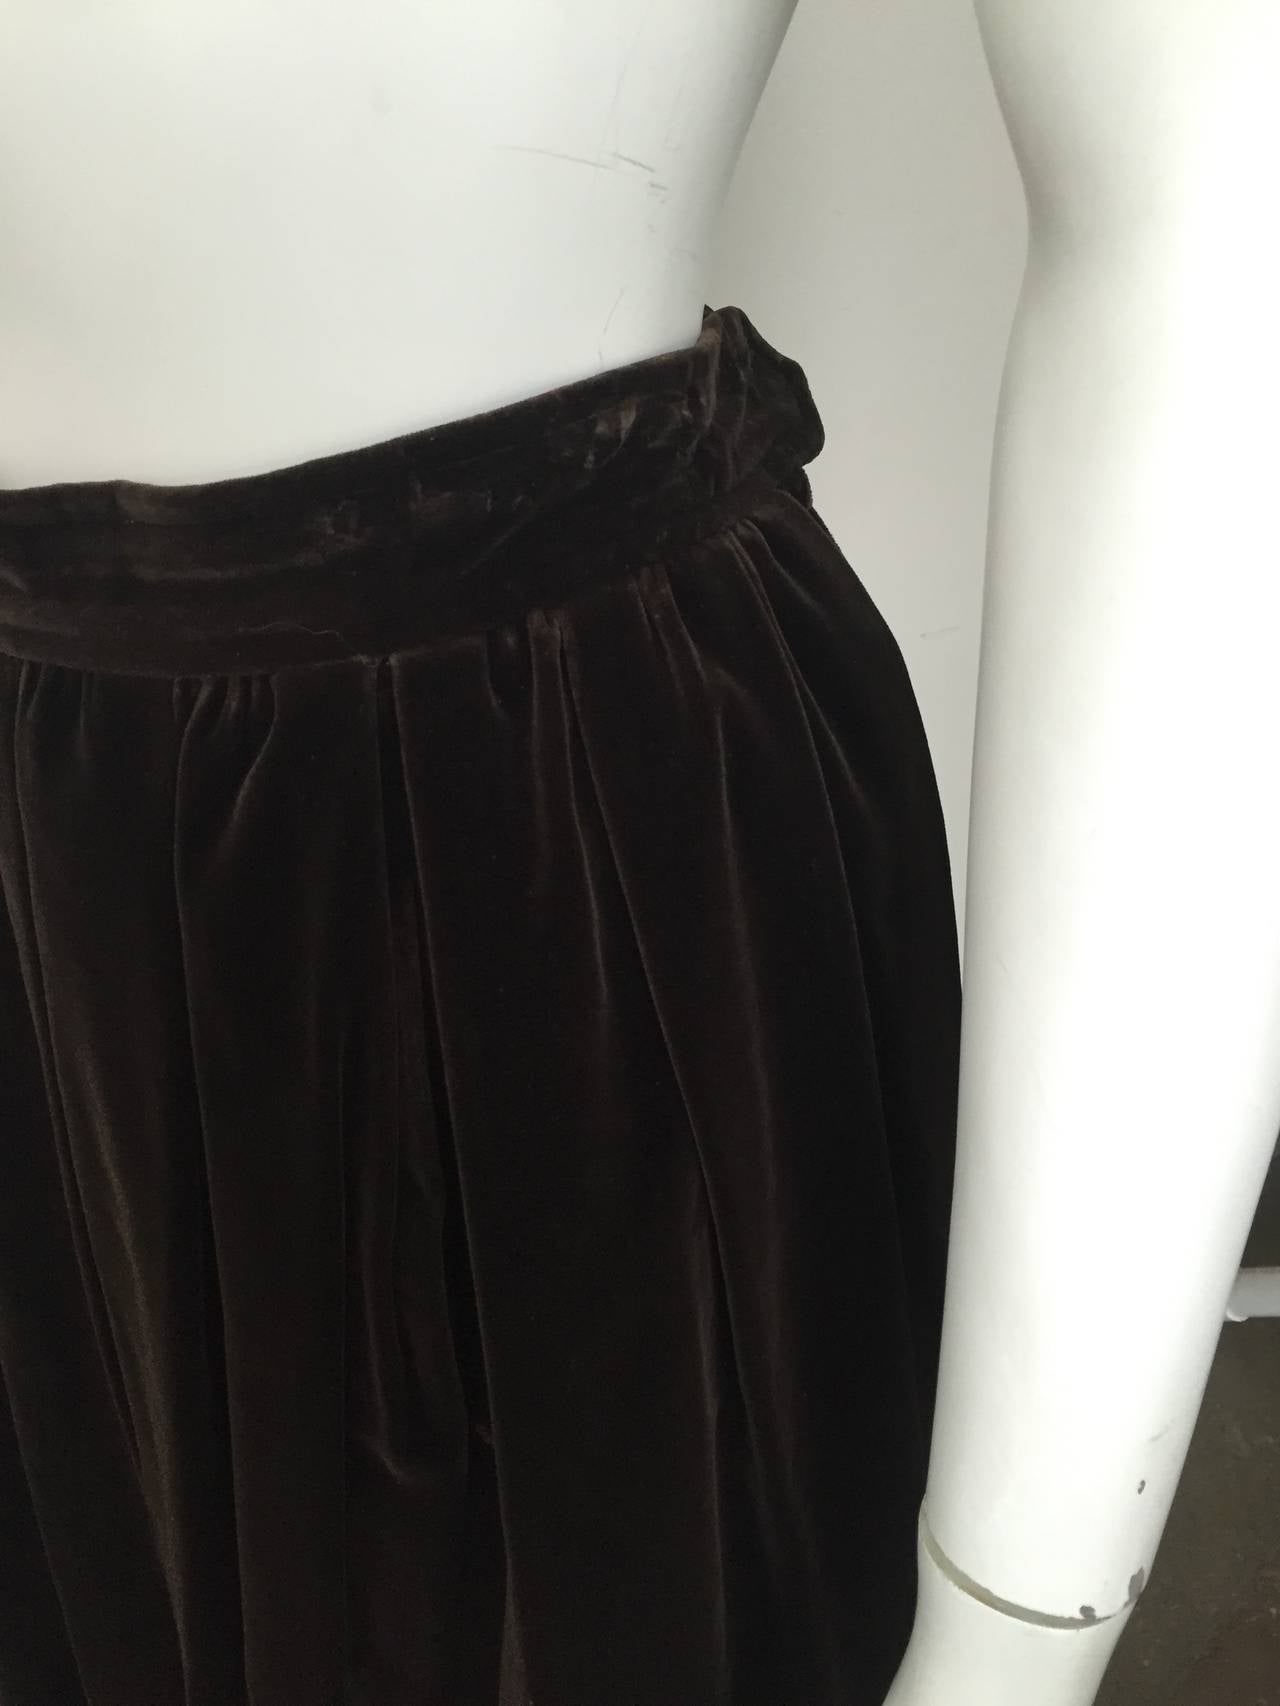 Saint Laurent Rive Gauche 70s velvet skirt with pockets size 6. 2